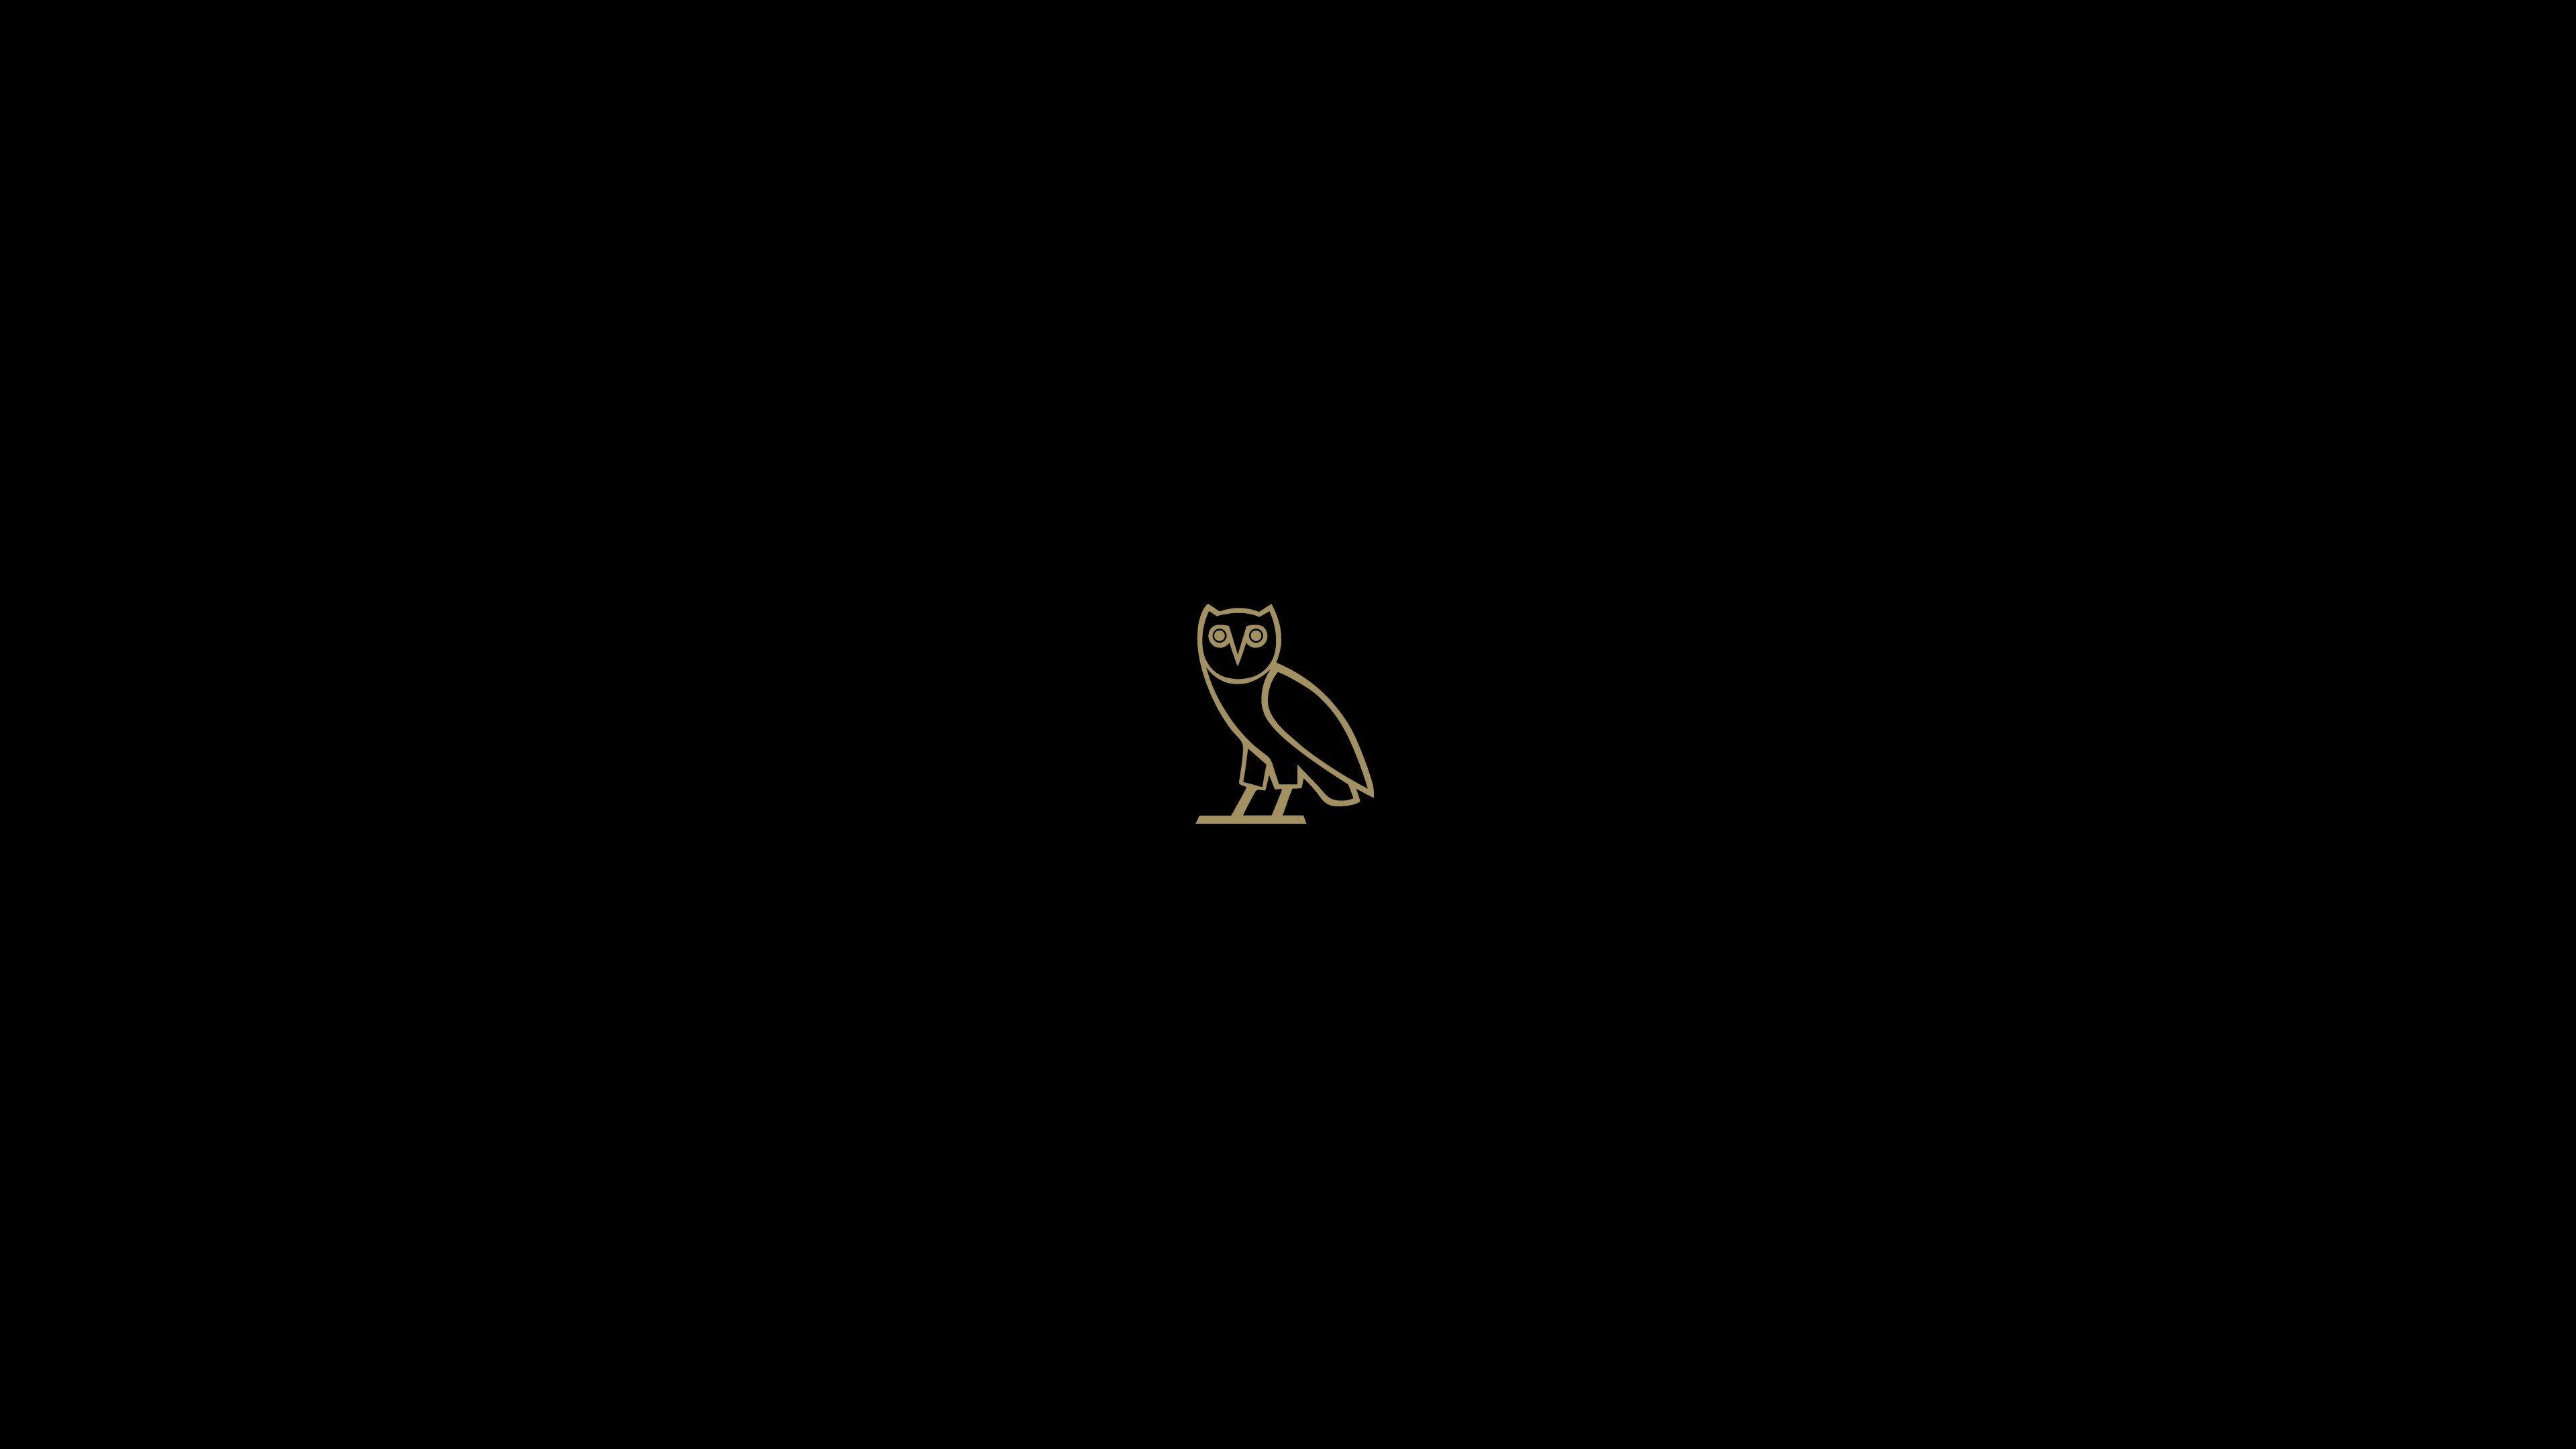 Drake Owl Logo - Drake Owl Logo Wallpaper (73+ images)